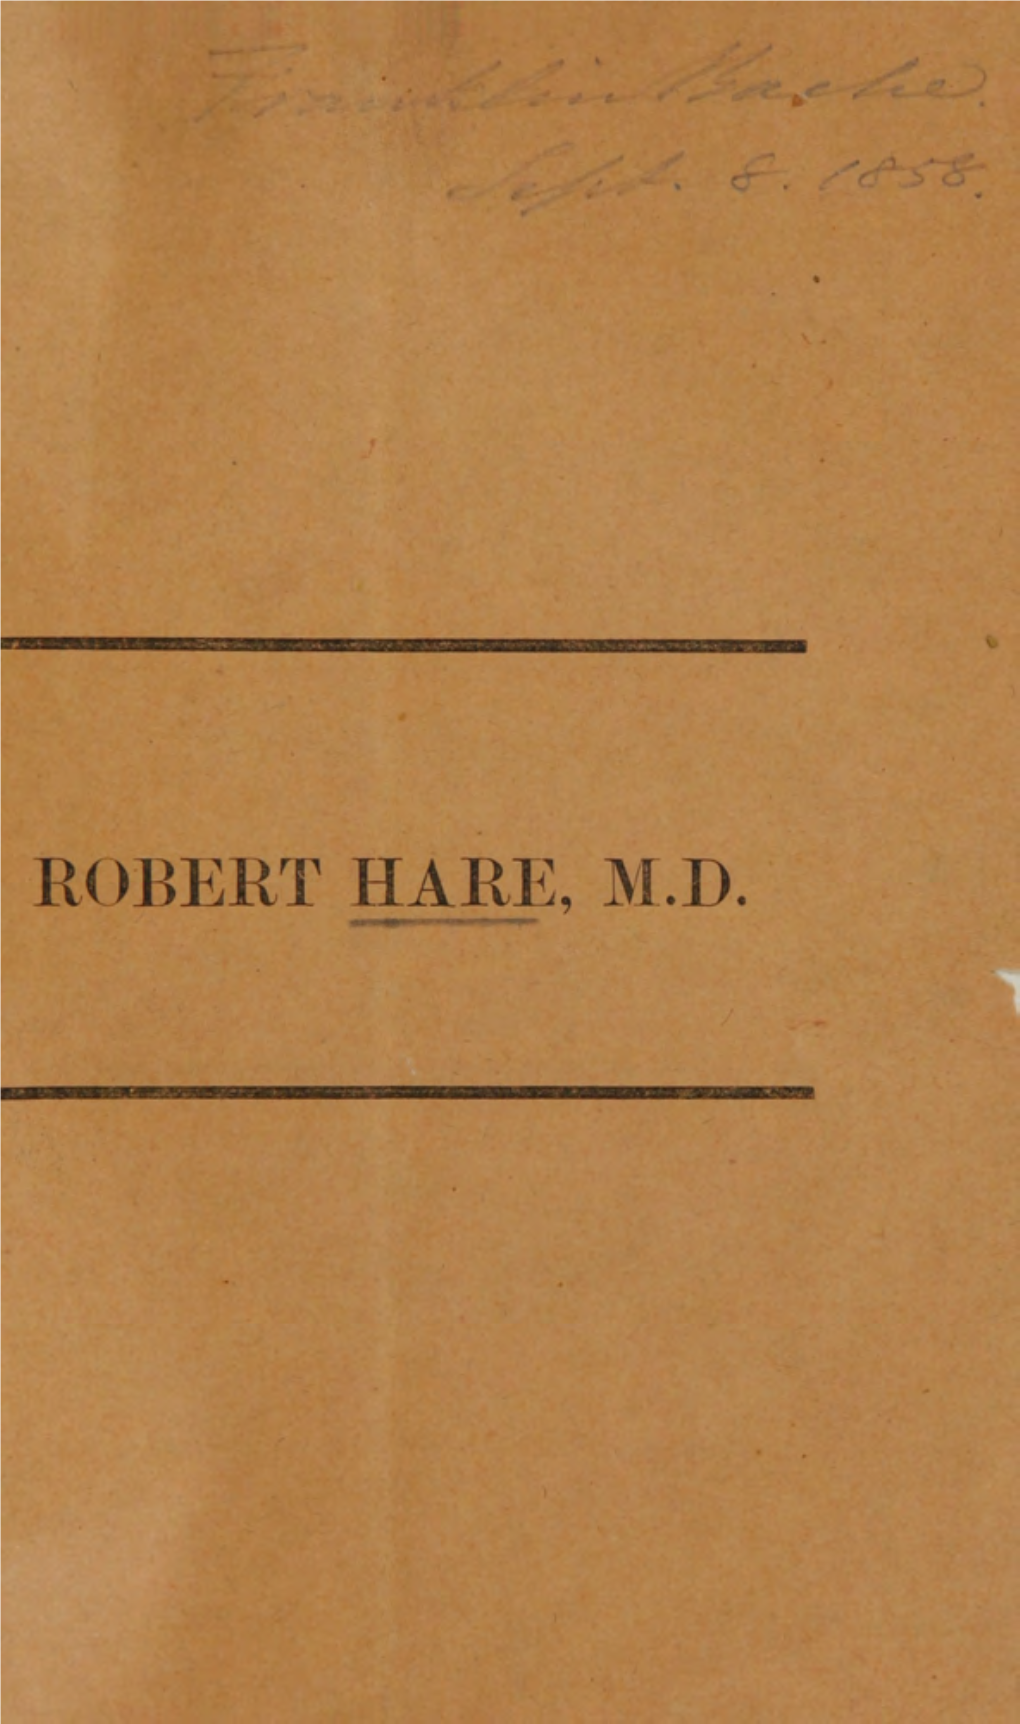 Robert Hare, M.D